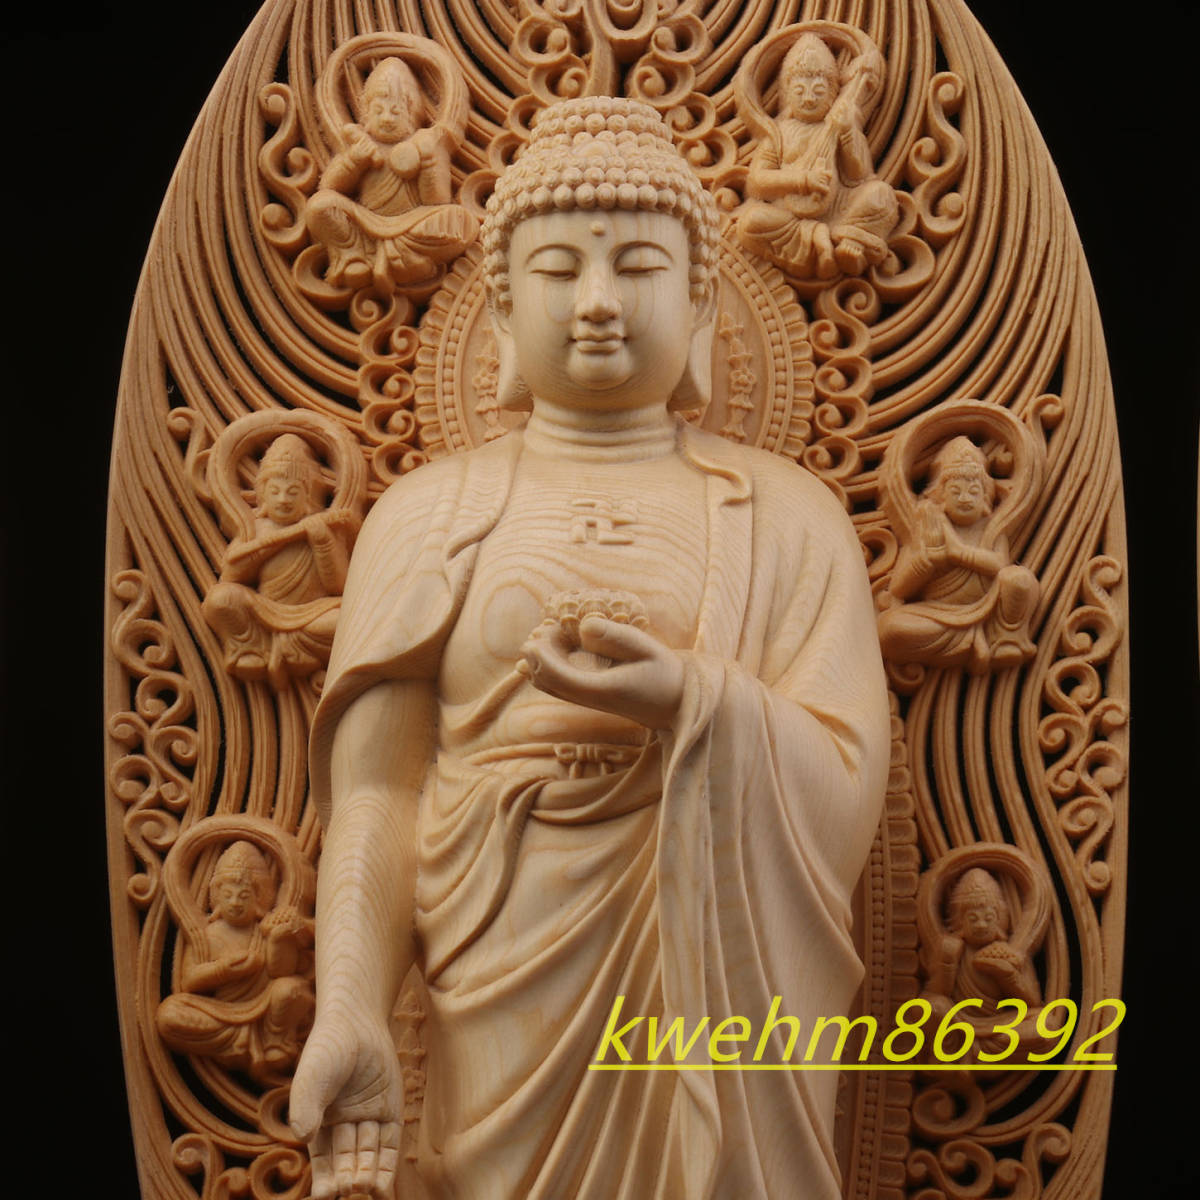 大型高43cm 木彫仏像 西方三聖 立像 観世音菩薩 阿弥陀如来 勢至菩薩